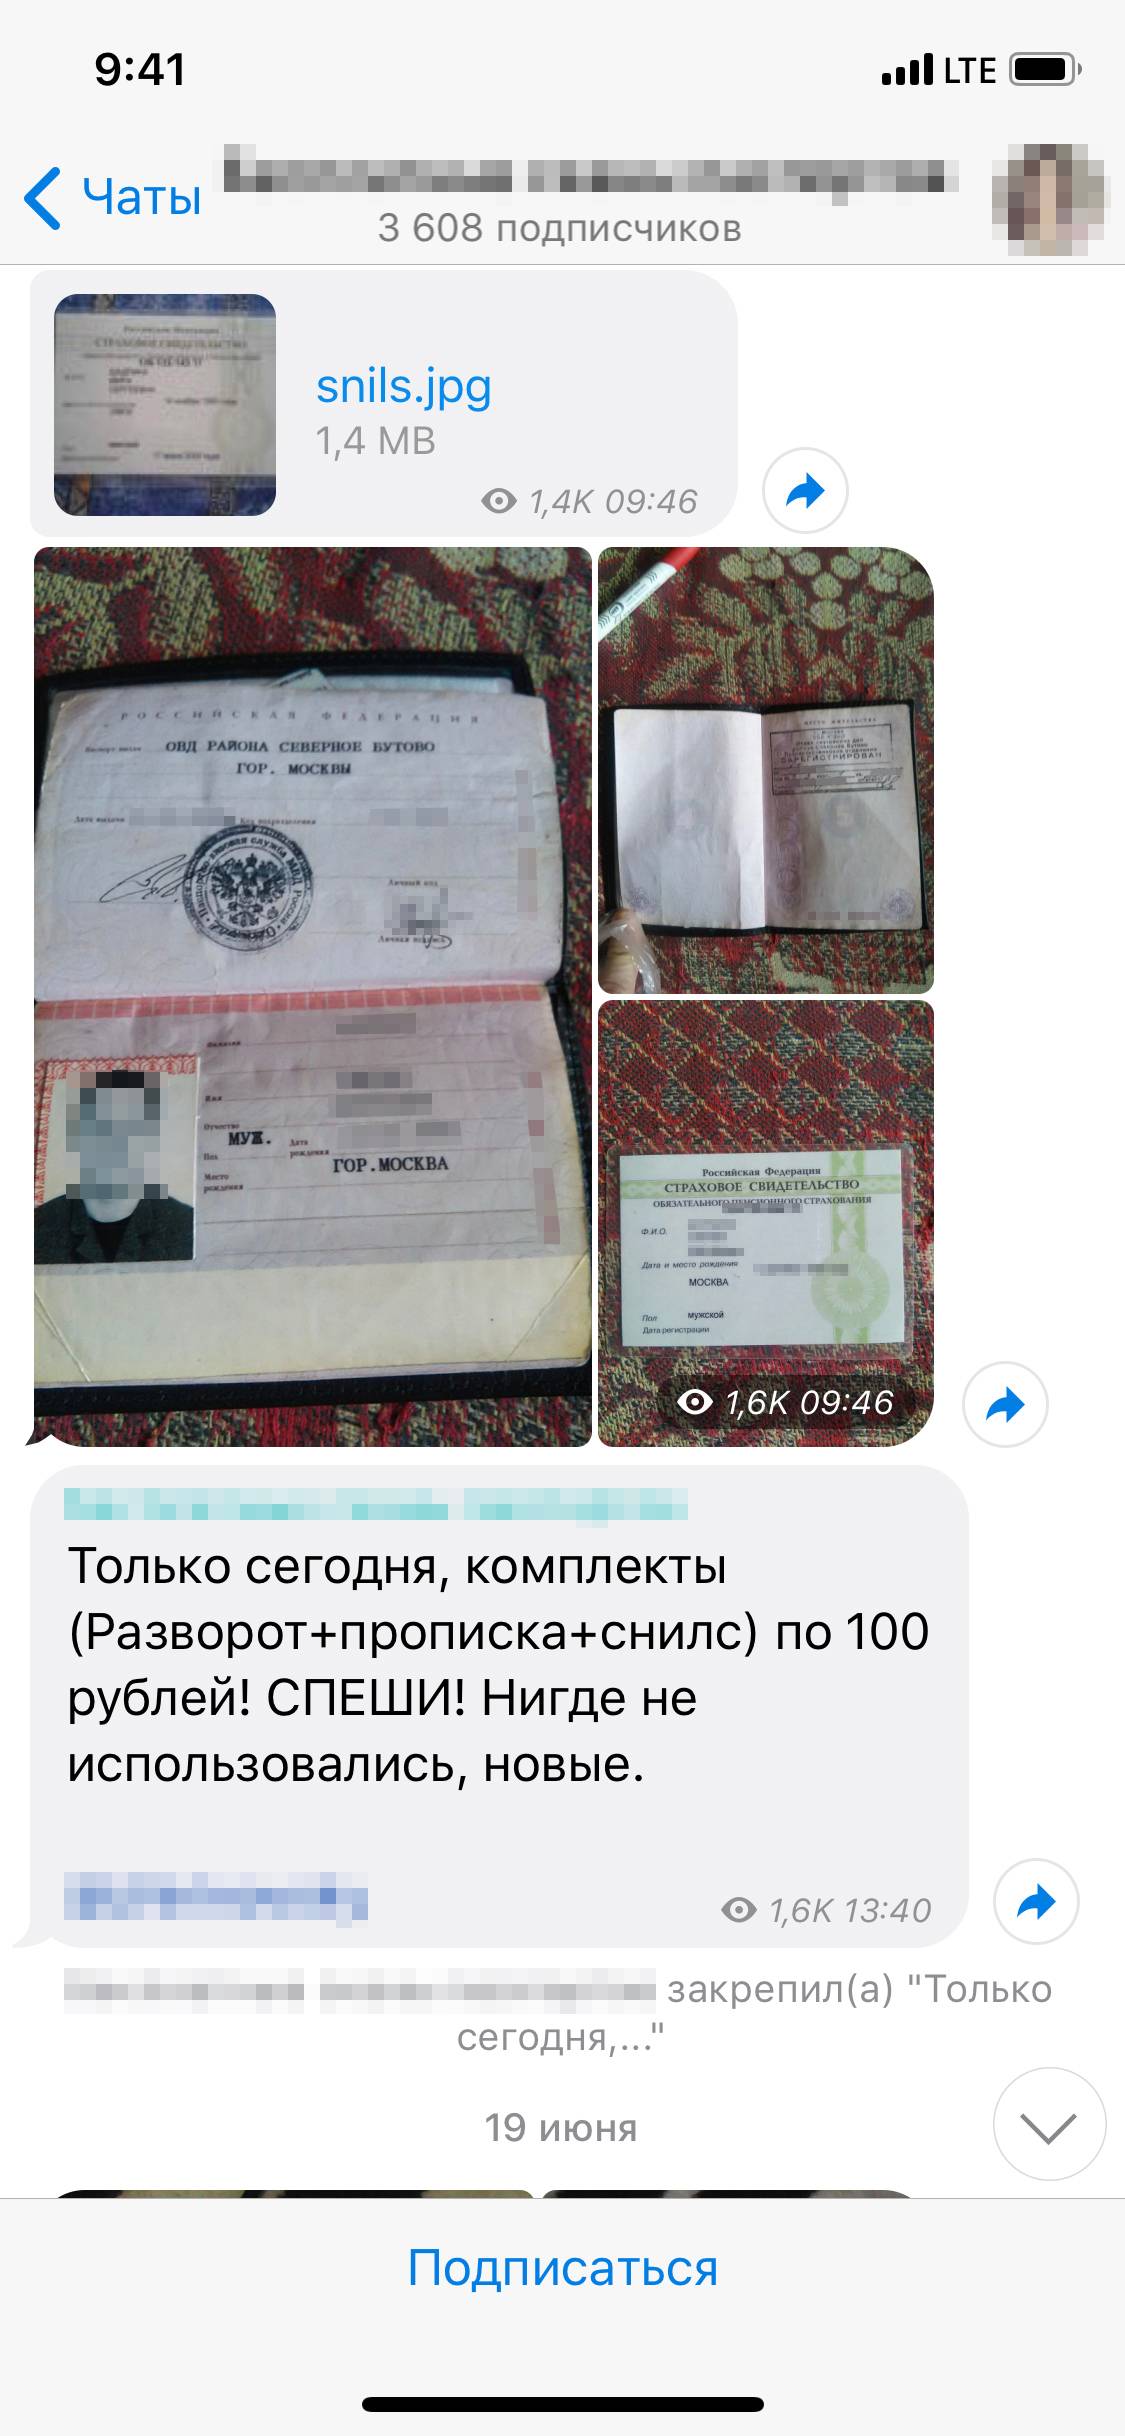 Один из каналов в Телеграме, где можно купить фотографии чужих документов — паспортов, СНИЛС